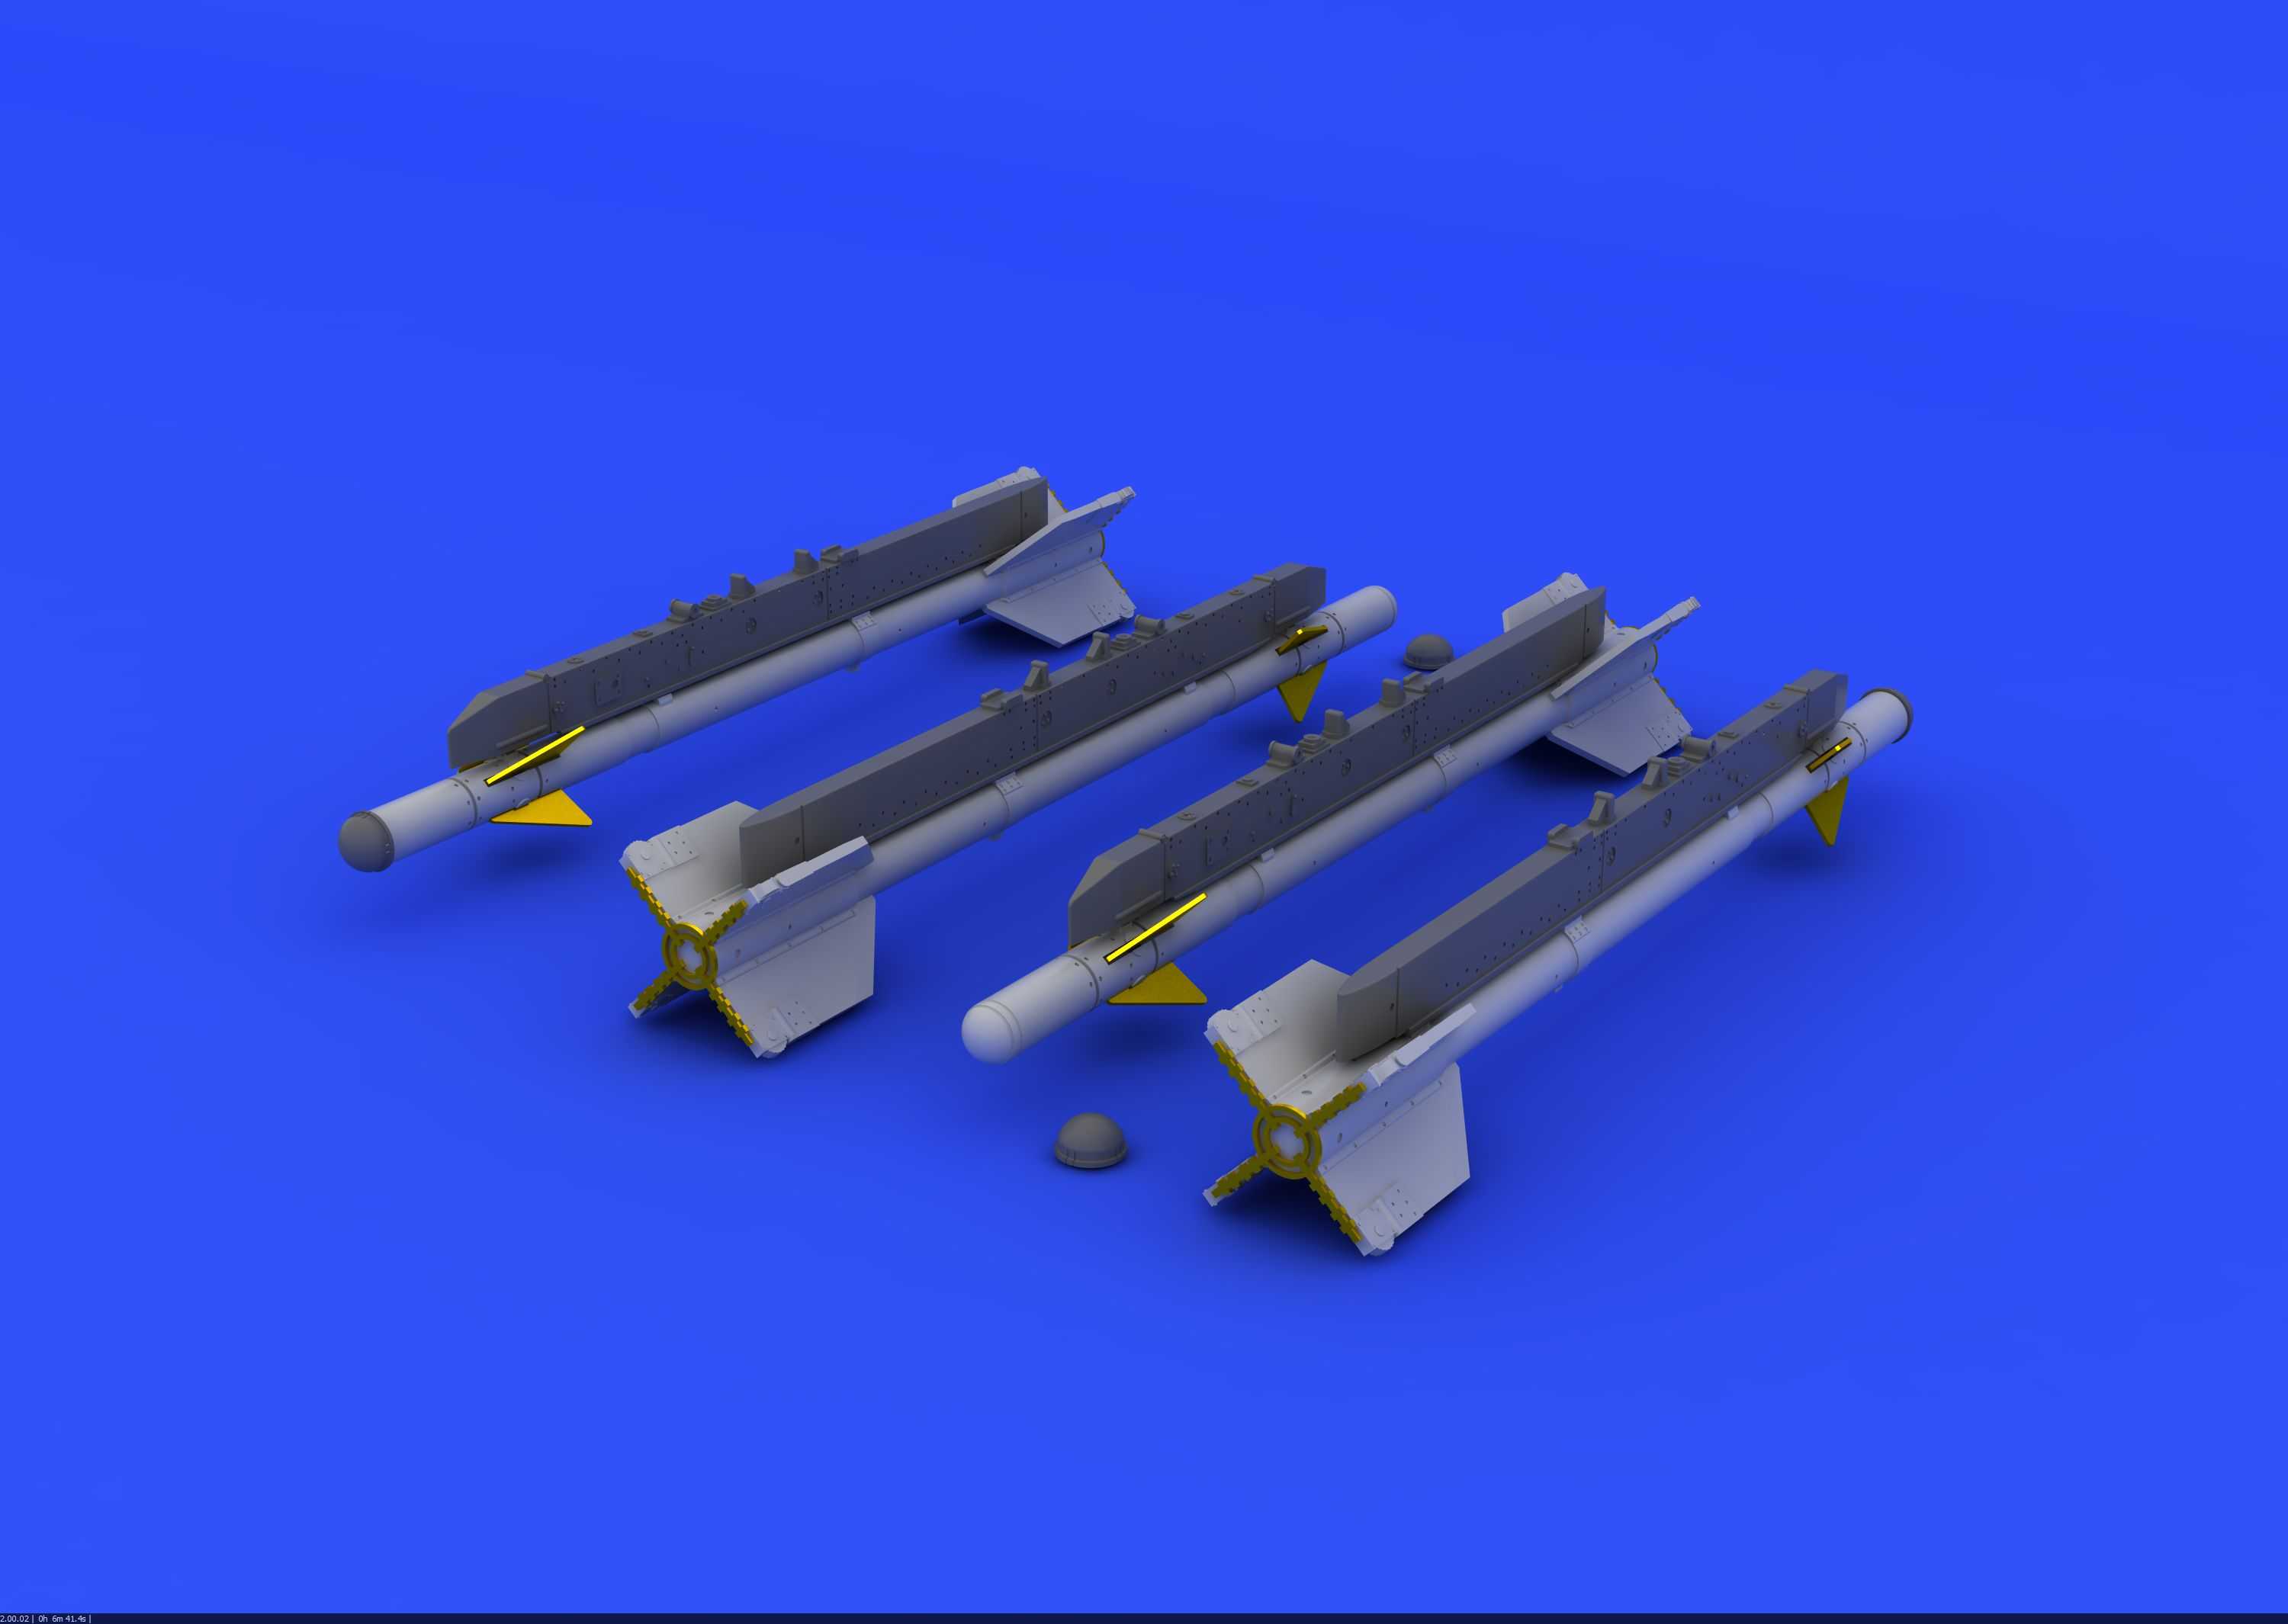 Accessoires - Missiles R-3S pour Mikoyan MiG-21 (conçus pour être util